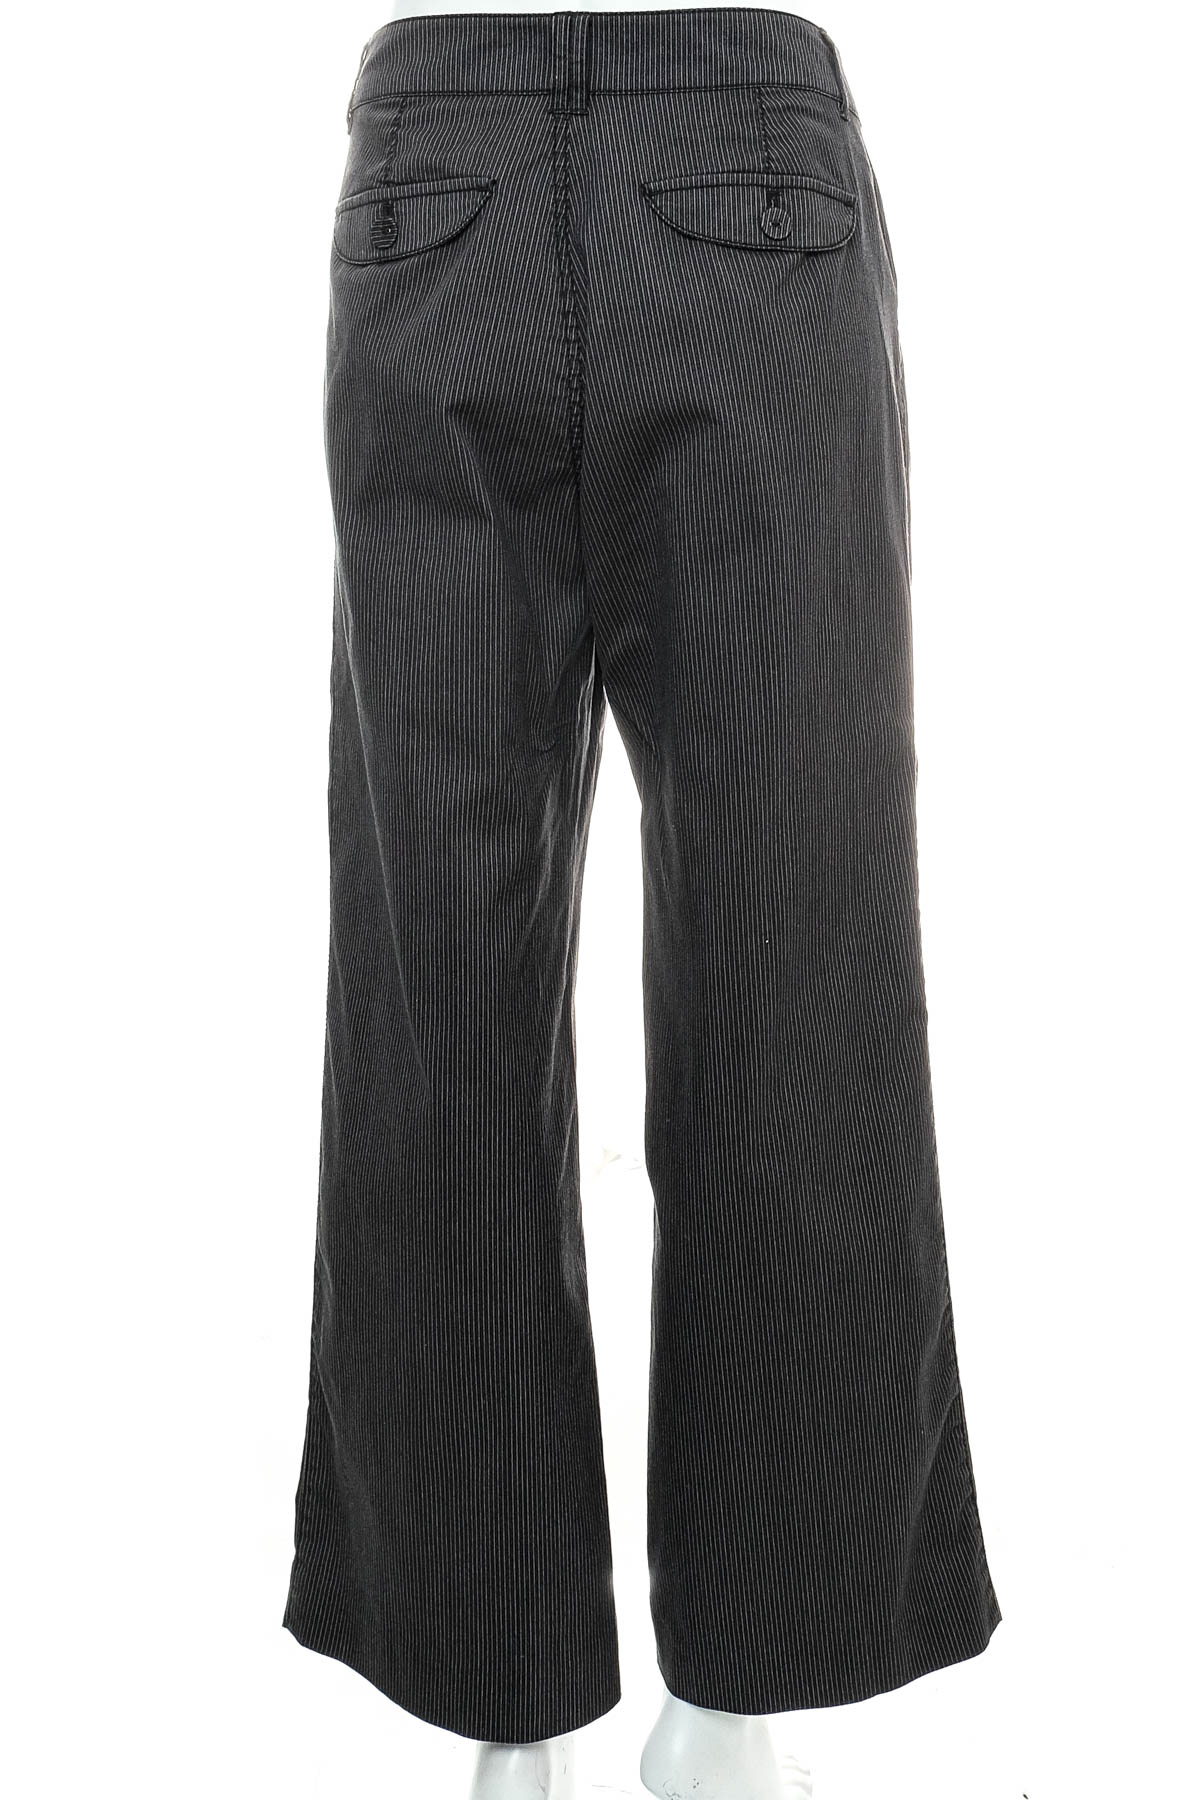 Pantaloni de damă - Street One - 1